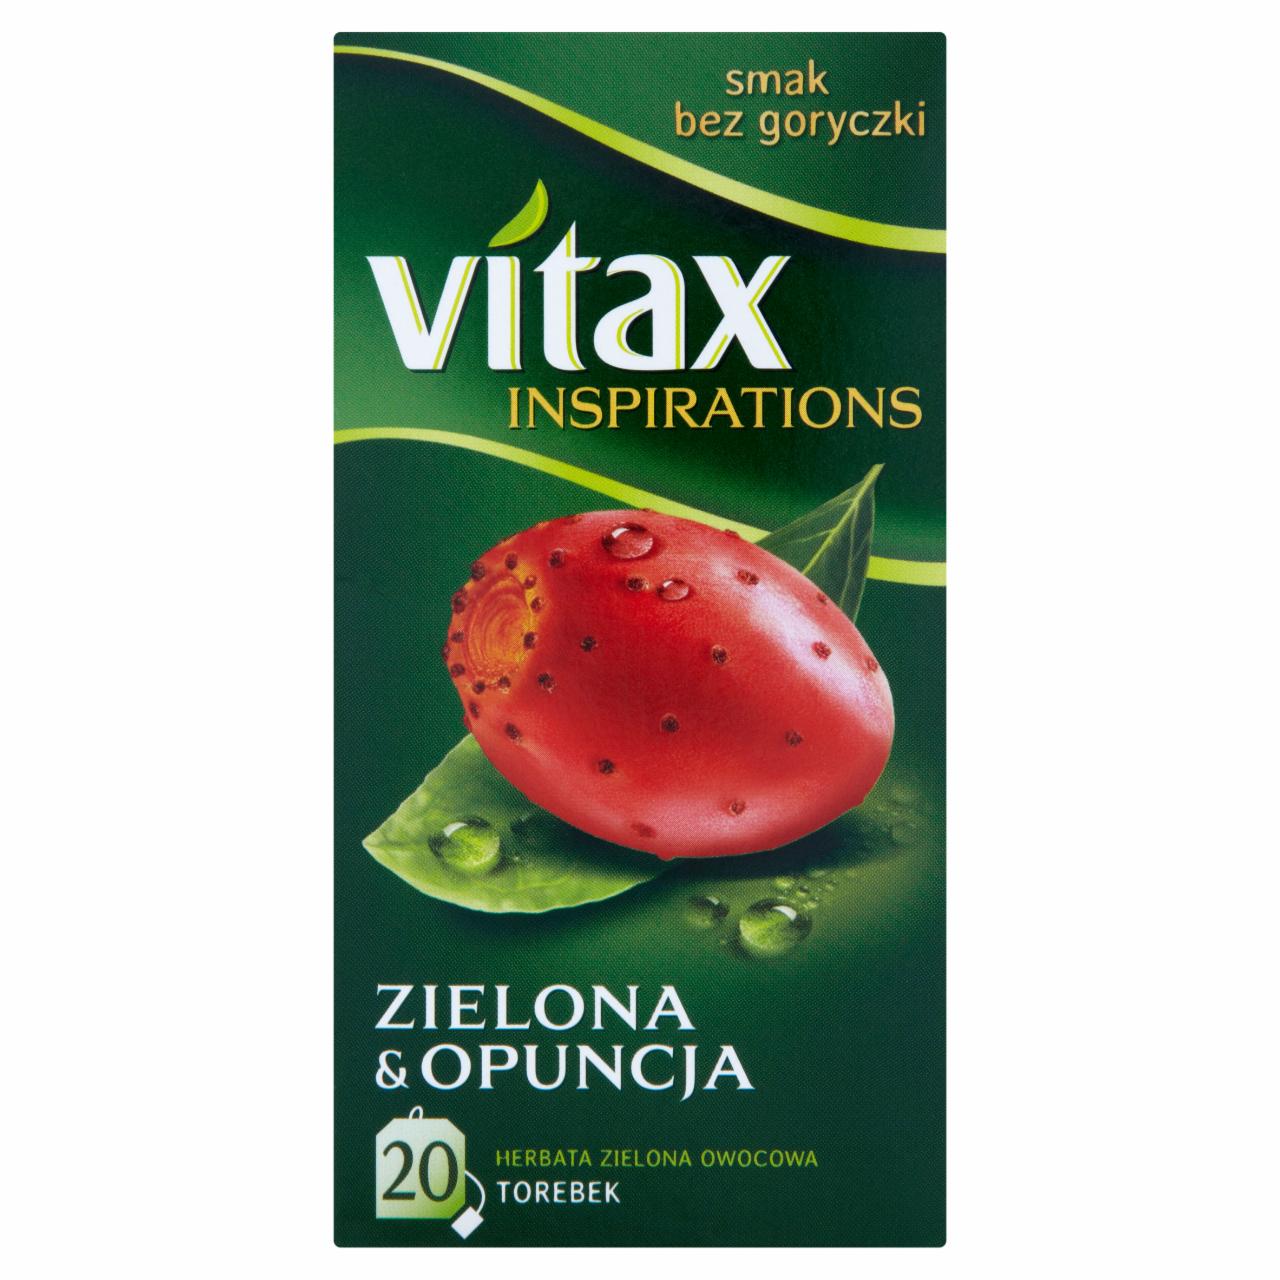 Zdjęcia - Vitax Inspirations Zielona and Opuncja Herbata zielona owocowa 30 g (20 torebek)